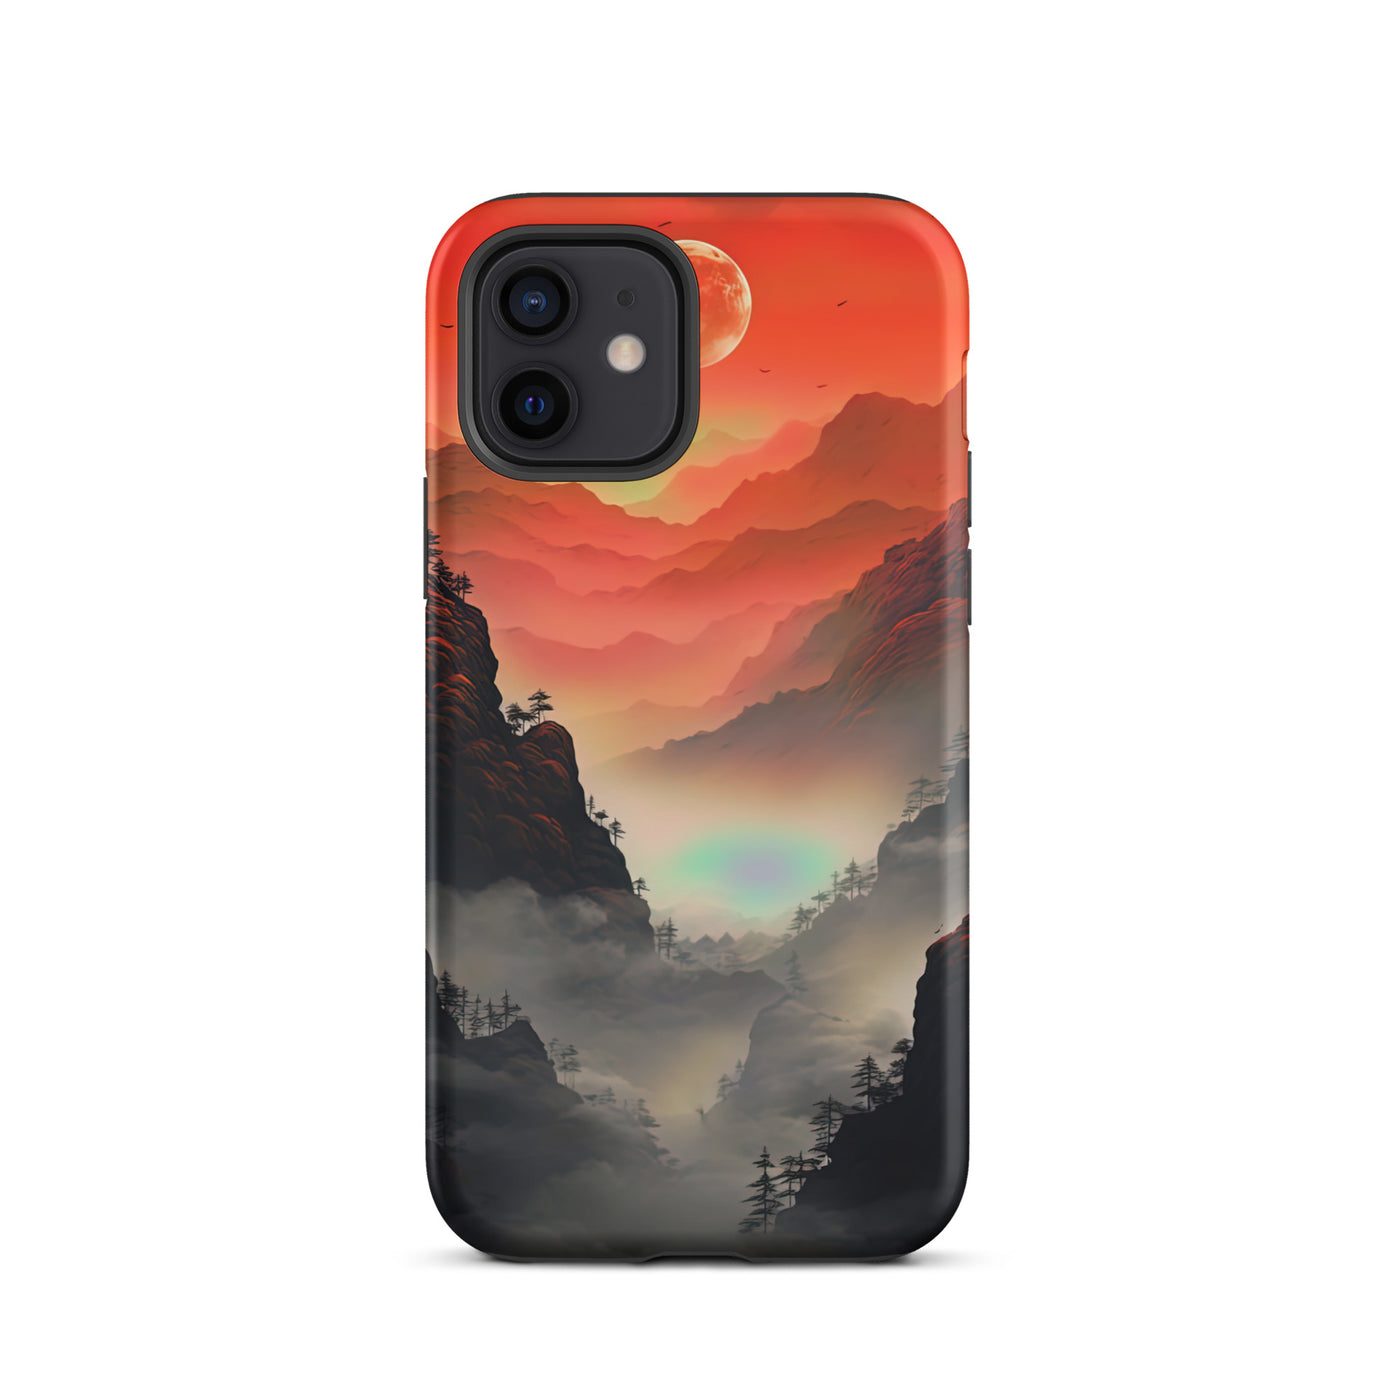 Gebirge, rote Farben und Nebel - Episches Kunstwerk - iPhone Schutzhülle (robust) berge xxx iPhone 12